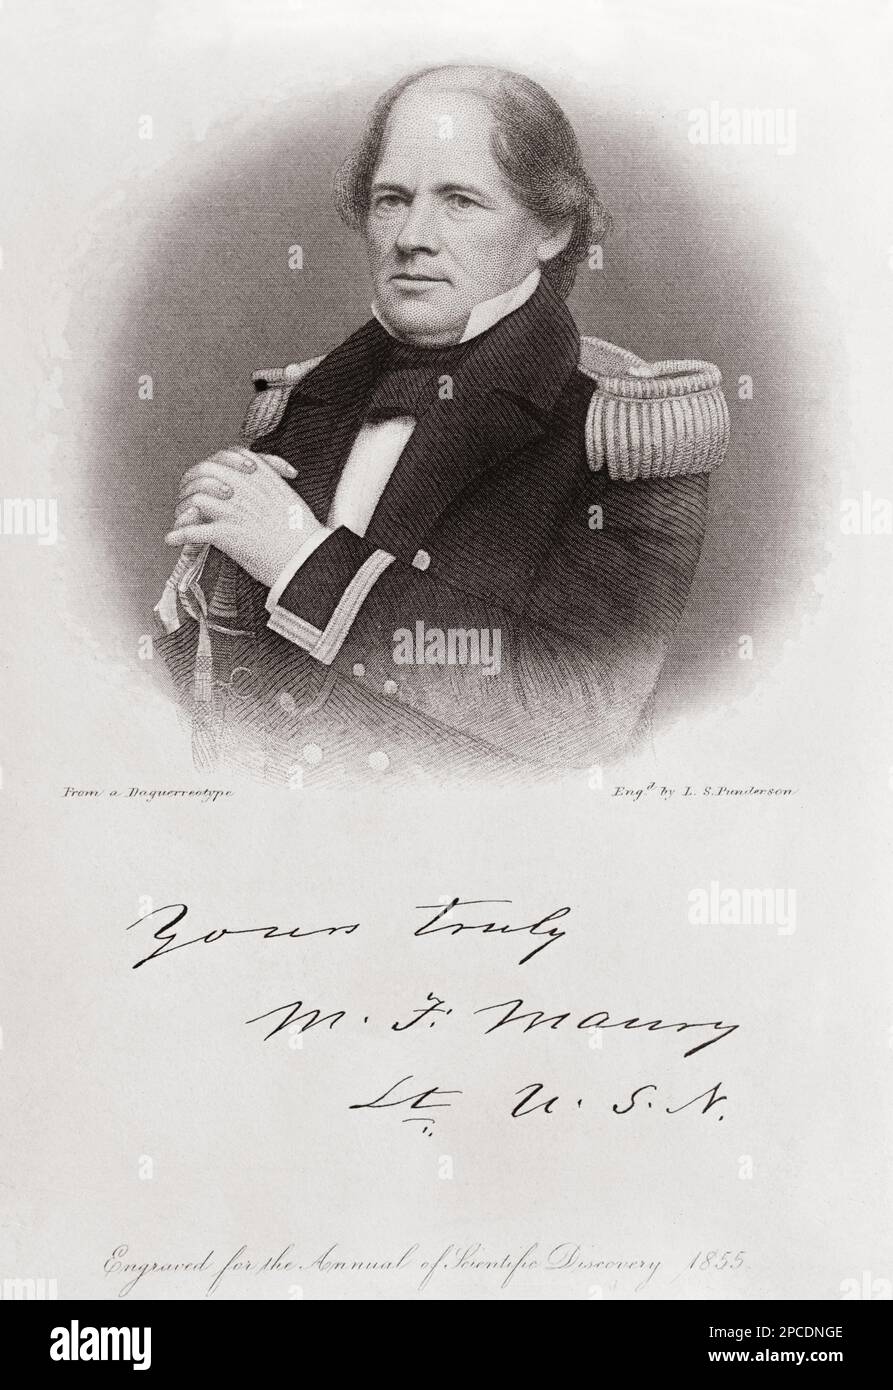 L'americano Matthew Fontaine MAURY (1806 - 1873) della Marina degli Stati Uniti era un astronomo, storico, oceanografo, meteorologo, cartografo, Autore , geologo ed educatore .Ritratto engraving da un daguerreotipo , inciso da L.S. Punderson , 1855, Per l' 'Annual of Scientific Discovery' - ASTRONOMIA - ASTRONOMIA - ASTRONOMIA - CARTOGRAFIA - CARTOGRAFO - GEOLOGO - GEOLOGO - foto storiche - foto storica - scienziato - scienziato - incisione - sci - SCIENZIATO - uniforme militare - uniforme divisa militare - autografo - autografo - firma - prima ---- Foto Stock